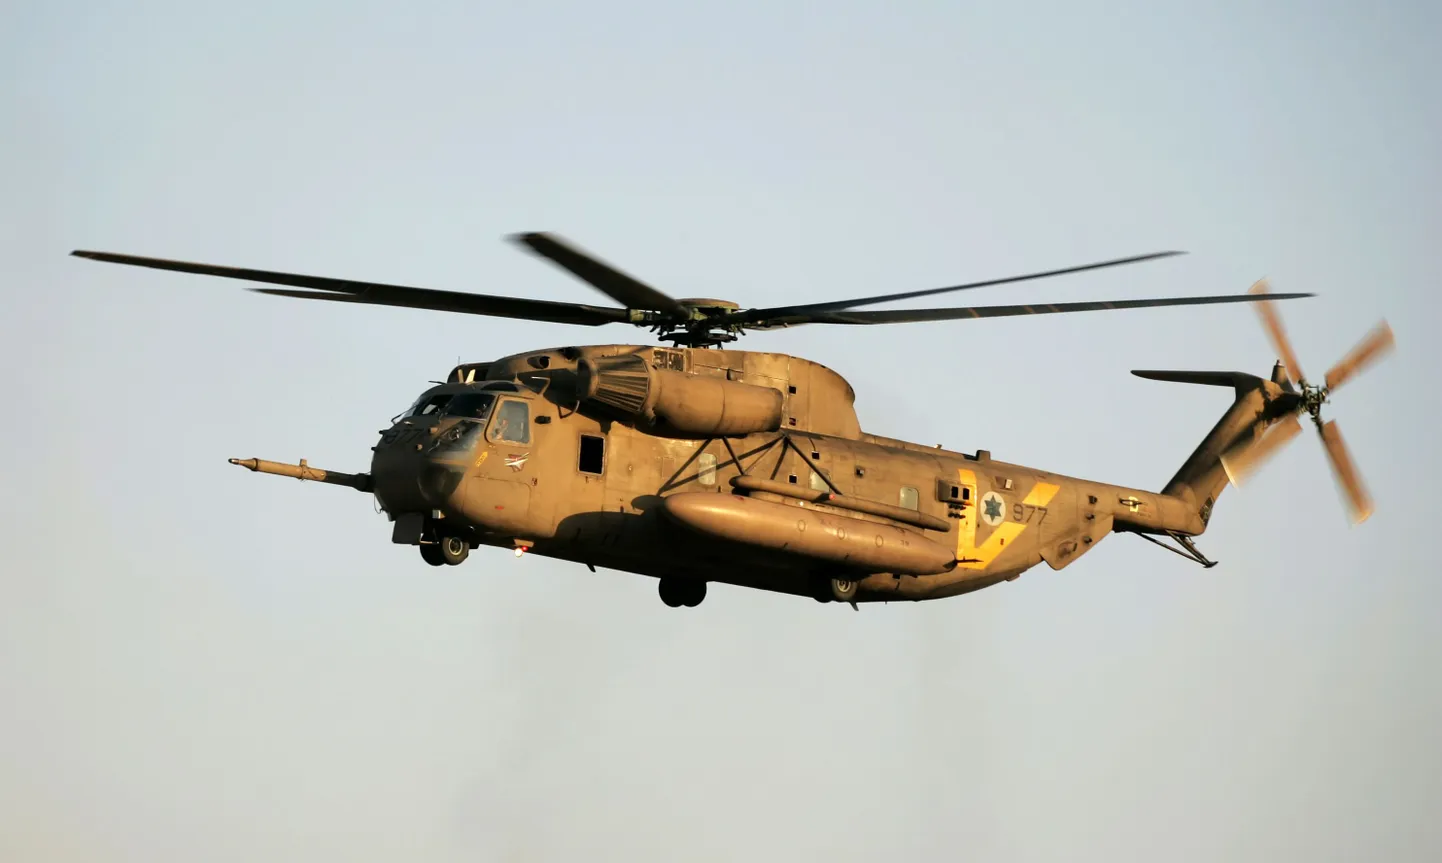 Вертолет CH-53 Sea Stallion, принадлежащий воздушным силам Израиля.